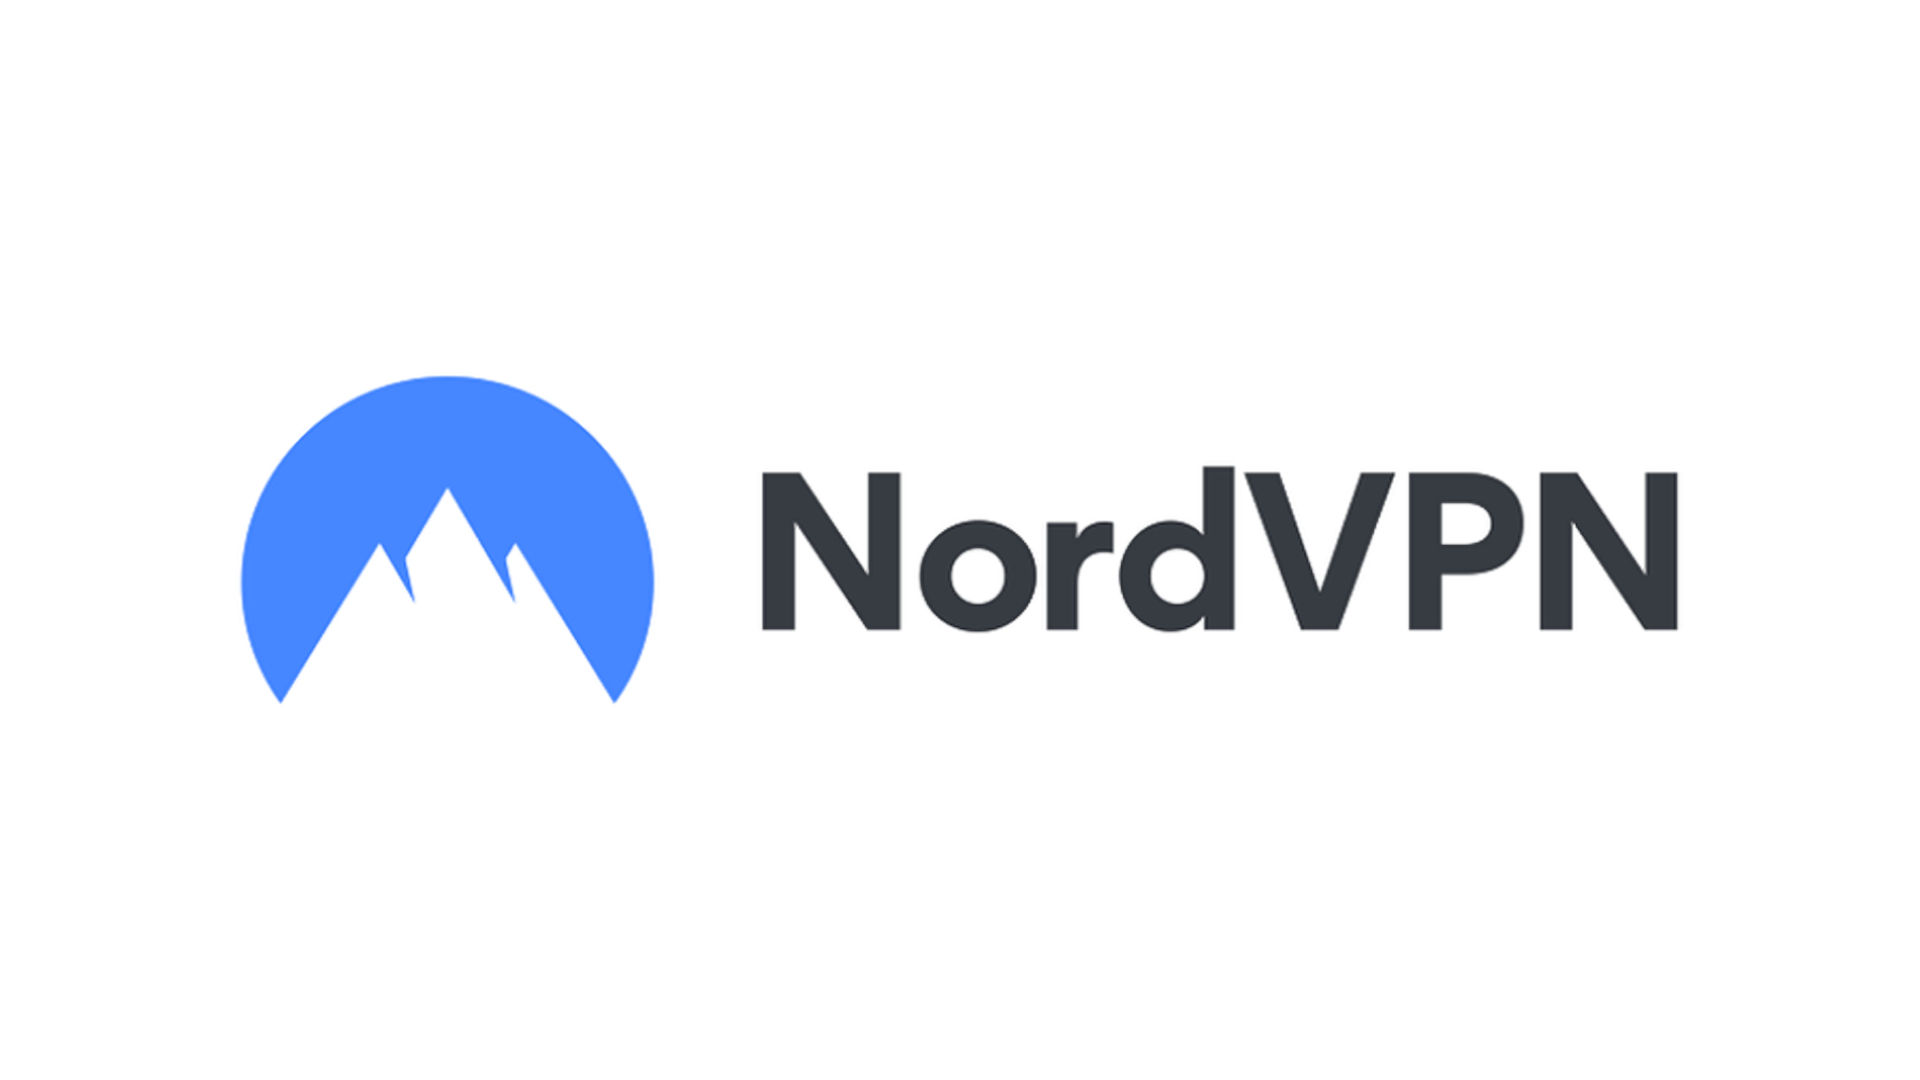 Melhor VPN móvel, opção de número 3. A imagem mostra o logotipo NordVPN